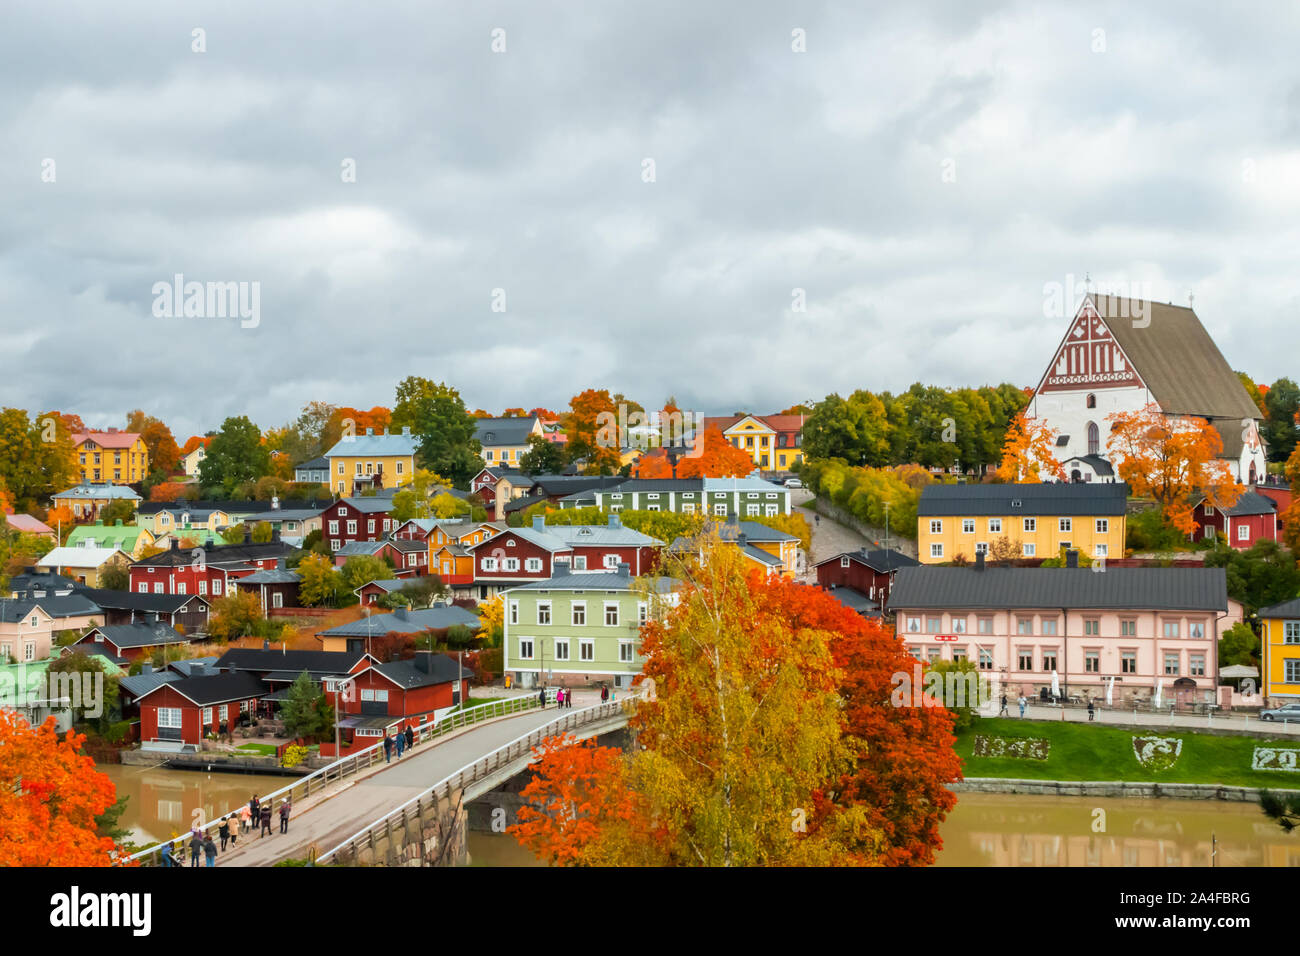 Auf die Altstadt von Porvoo, Finnland. Schöne Stadt Herbst Landschaft mit Porvoo Cathedral und bunten Holzhäusern. Stockfoto